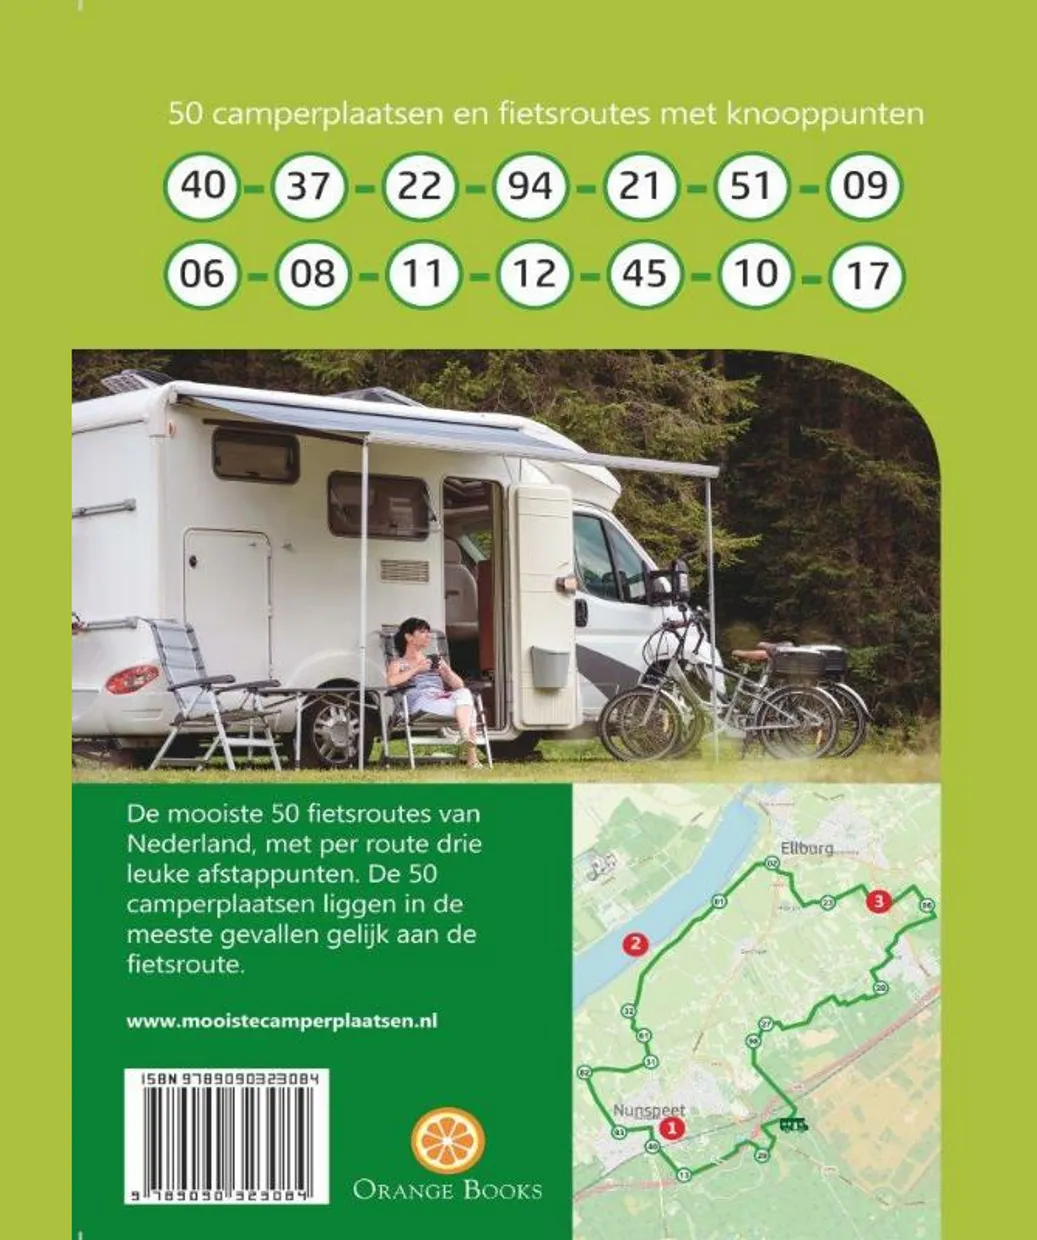 50 camperplaatsen & fietsroutes in Nederland